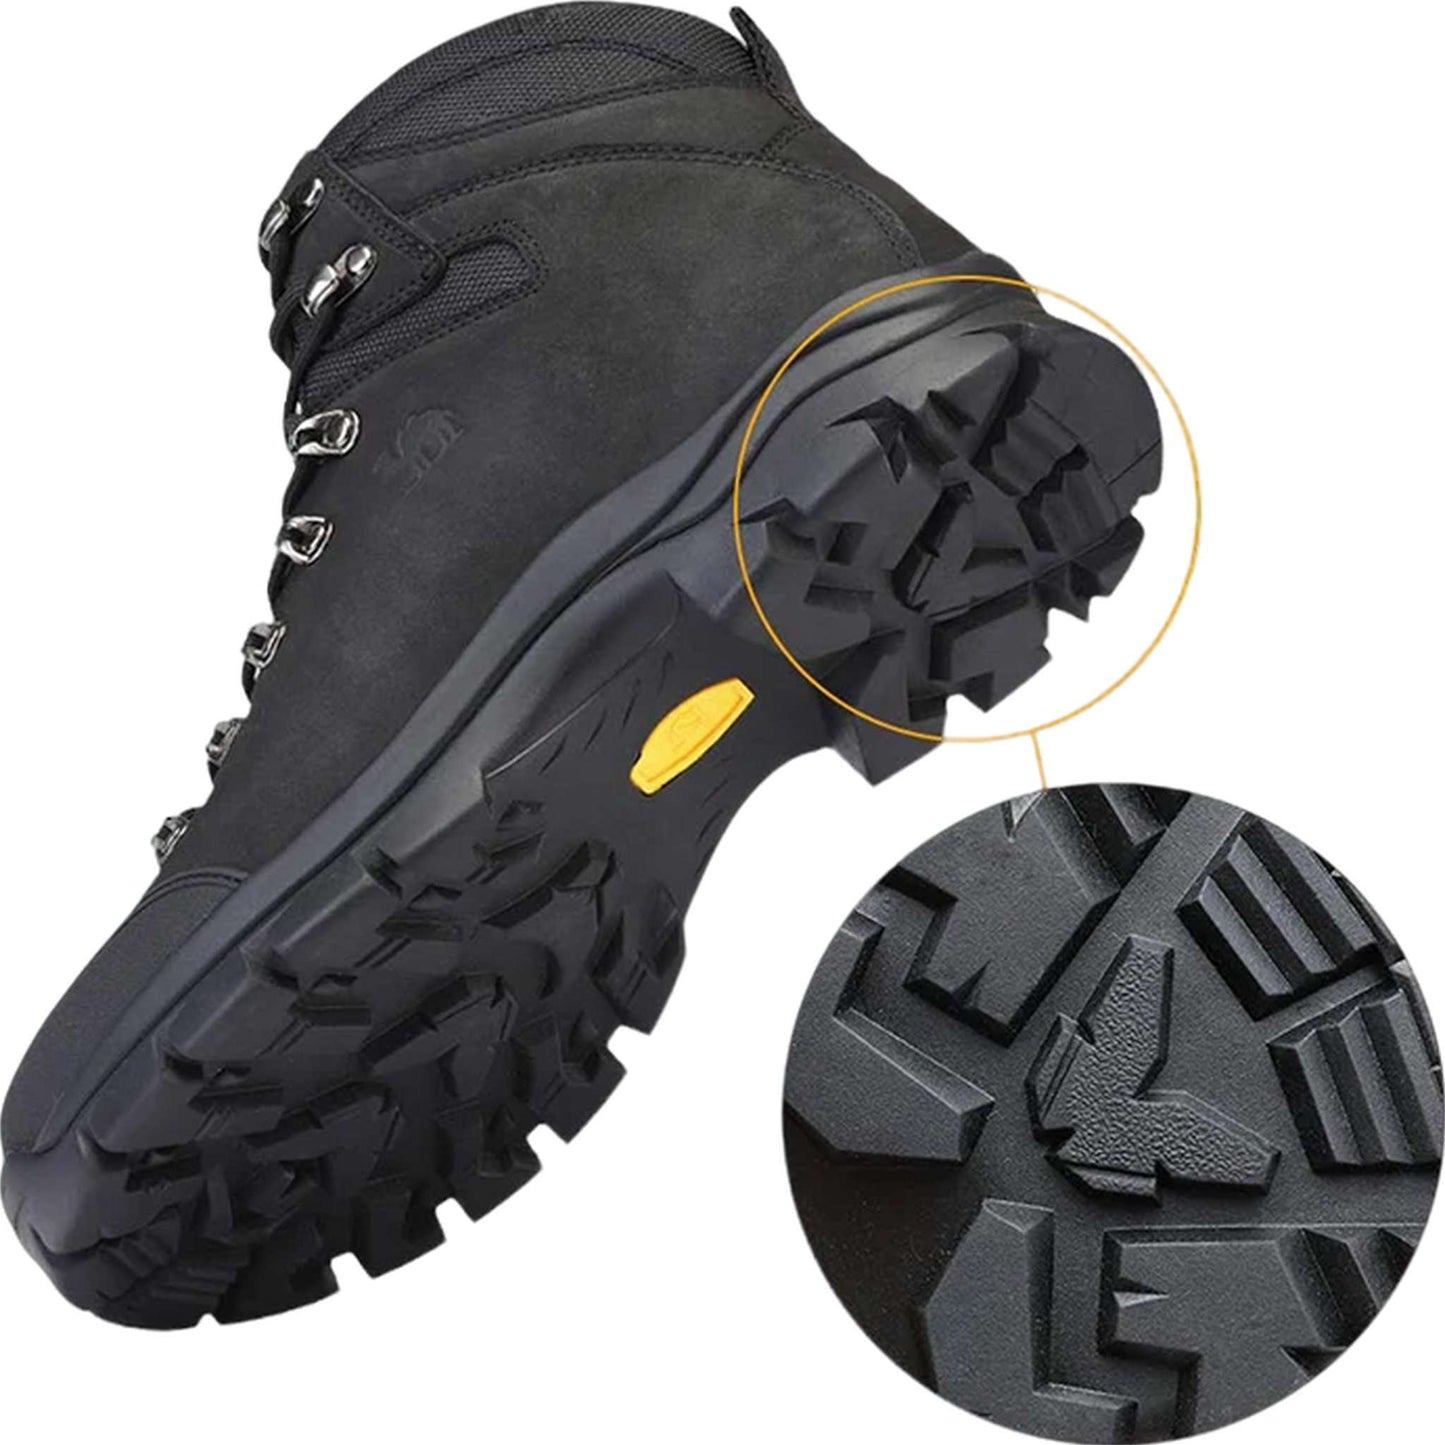 Men's Waterproof Hiking Boots - Durable Leather Outdoor Trekking Shoes